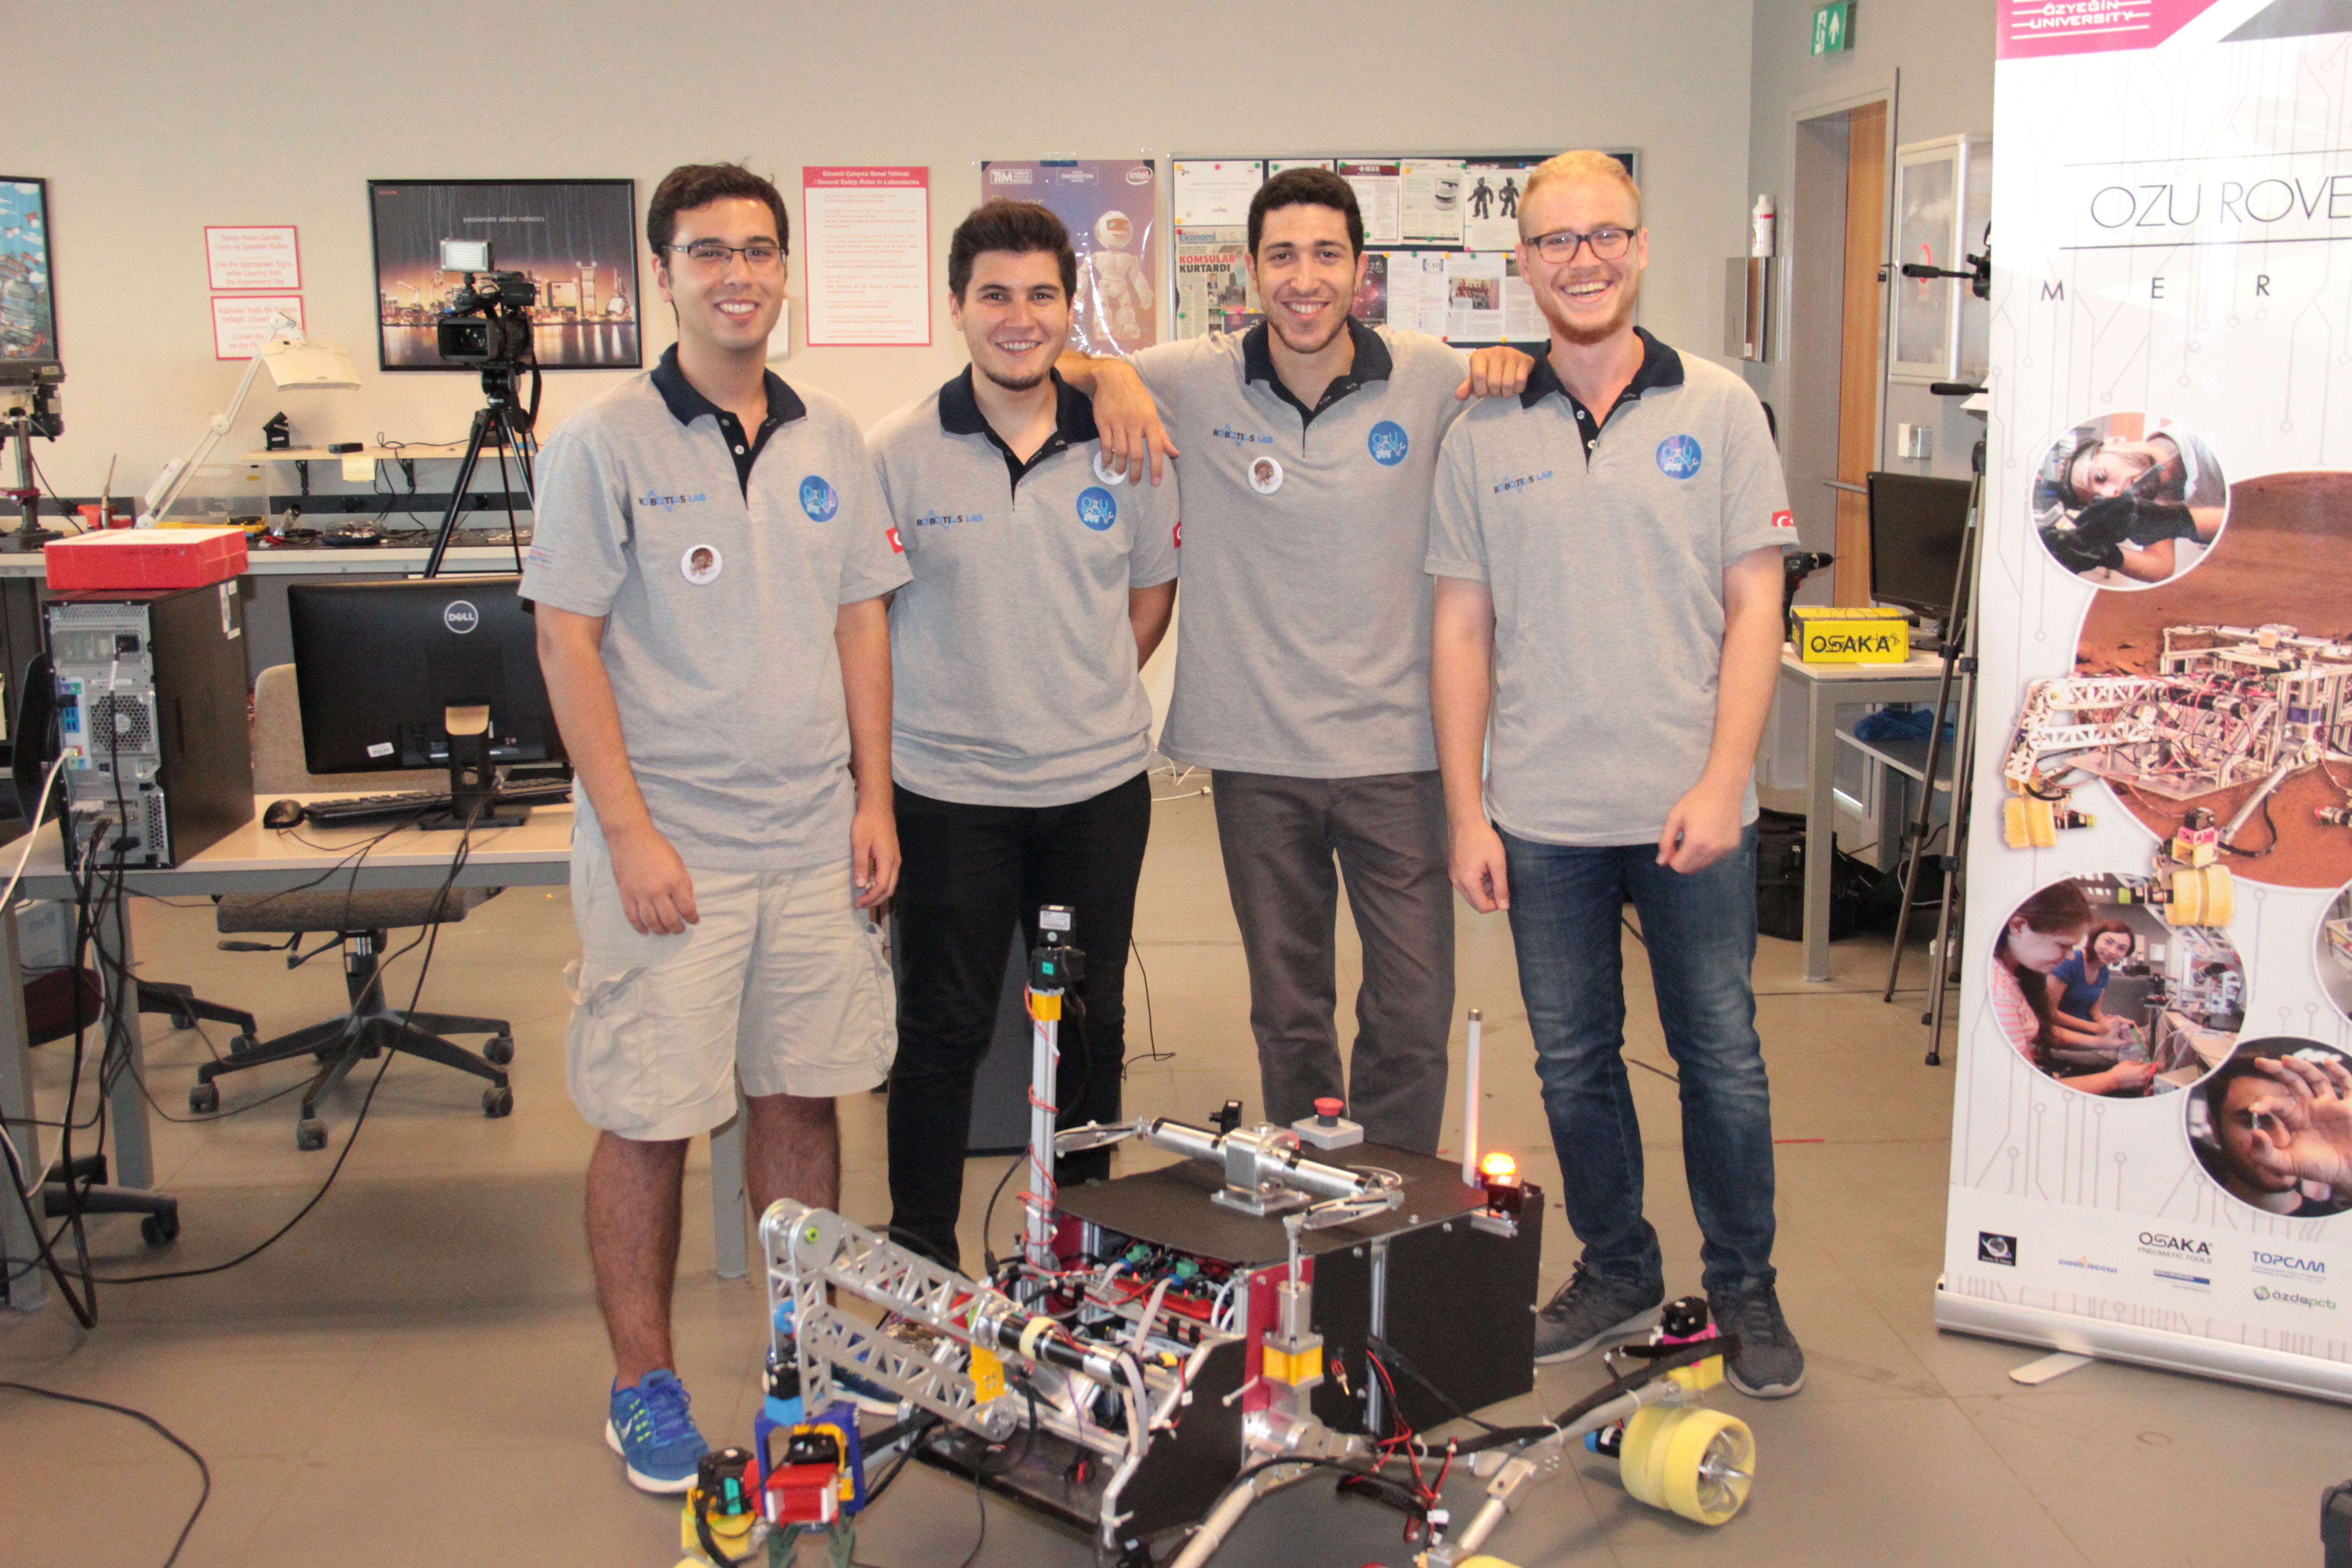 Özyeğin Üniversitesi öğrencilerinin tasarladığı mars robotu ikinci kez Türkiye’den katılan tek takım olarak Polonya’da yarışacak-1135